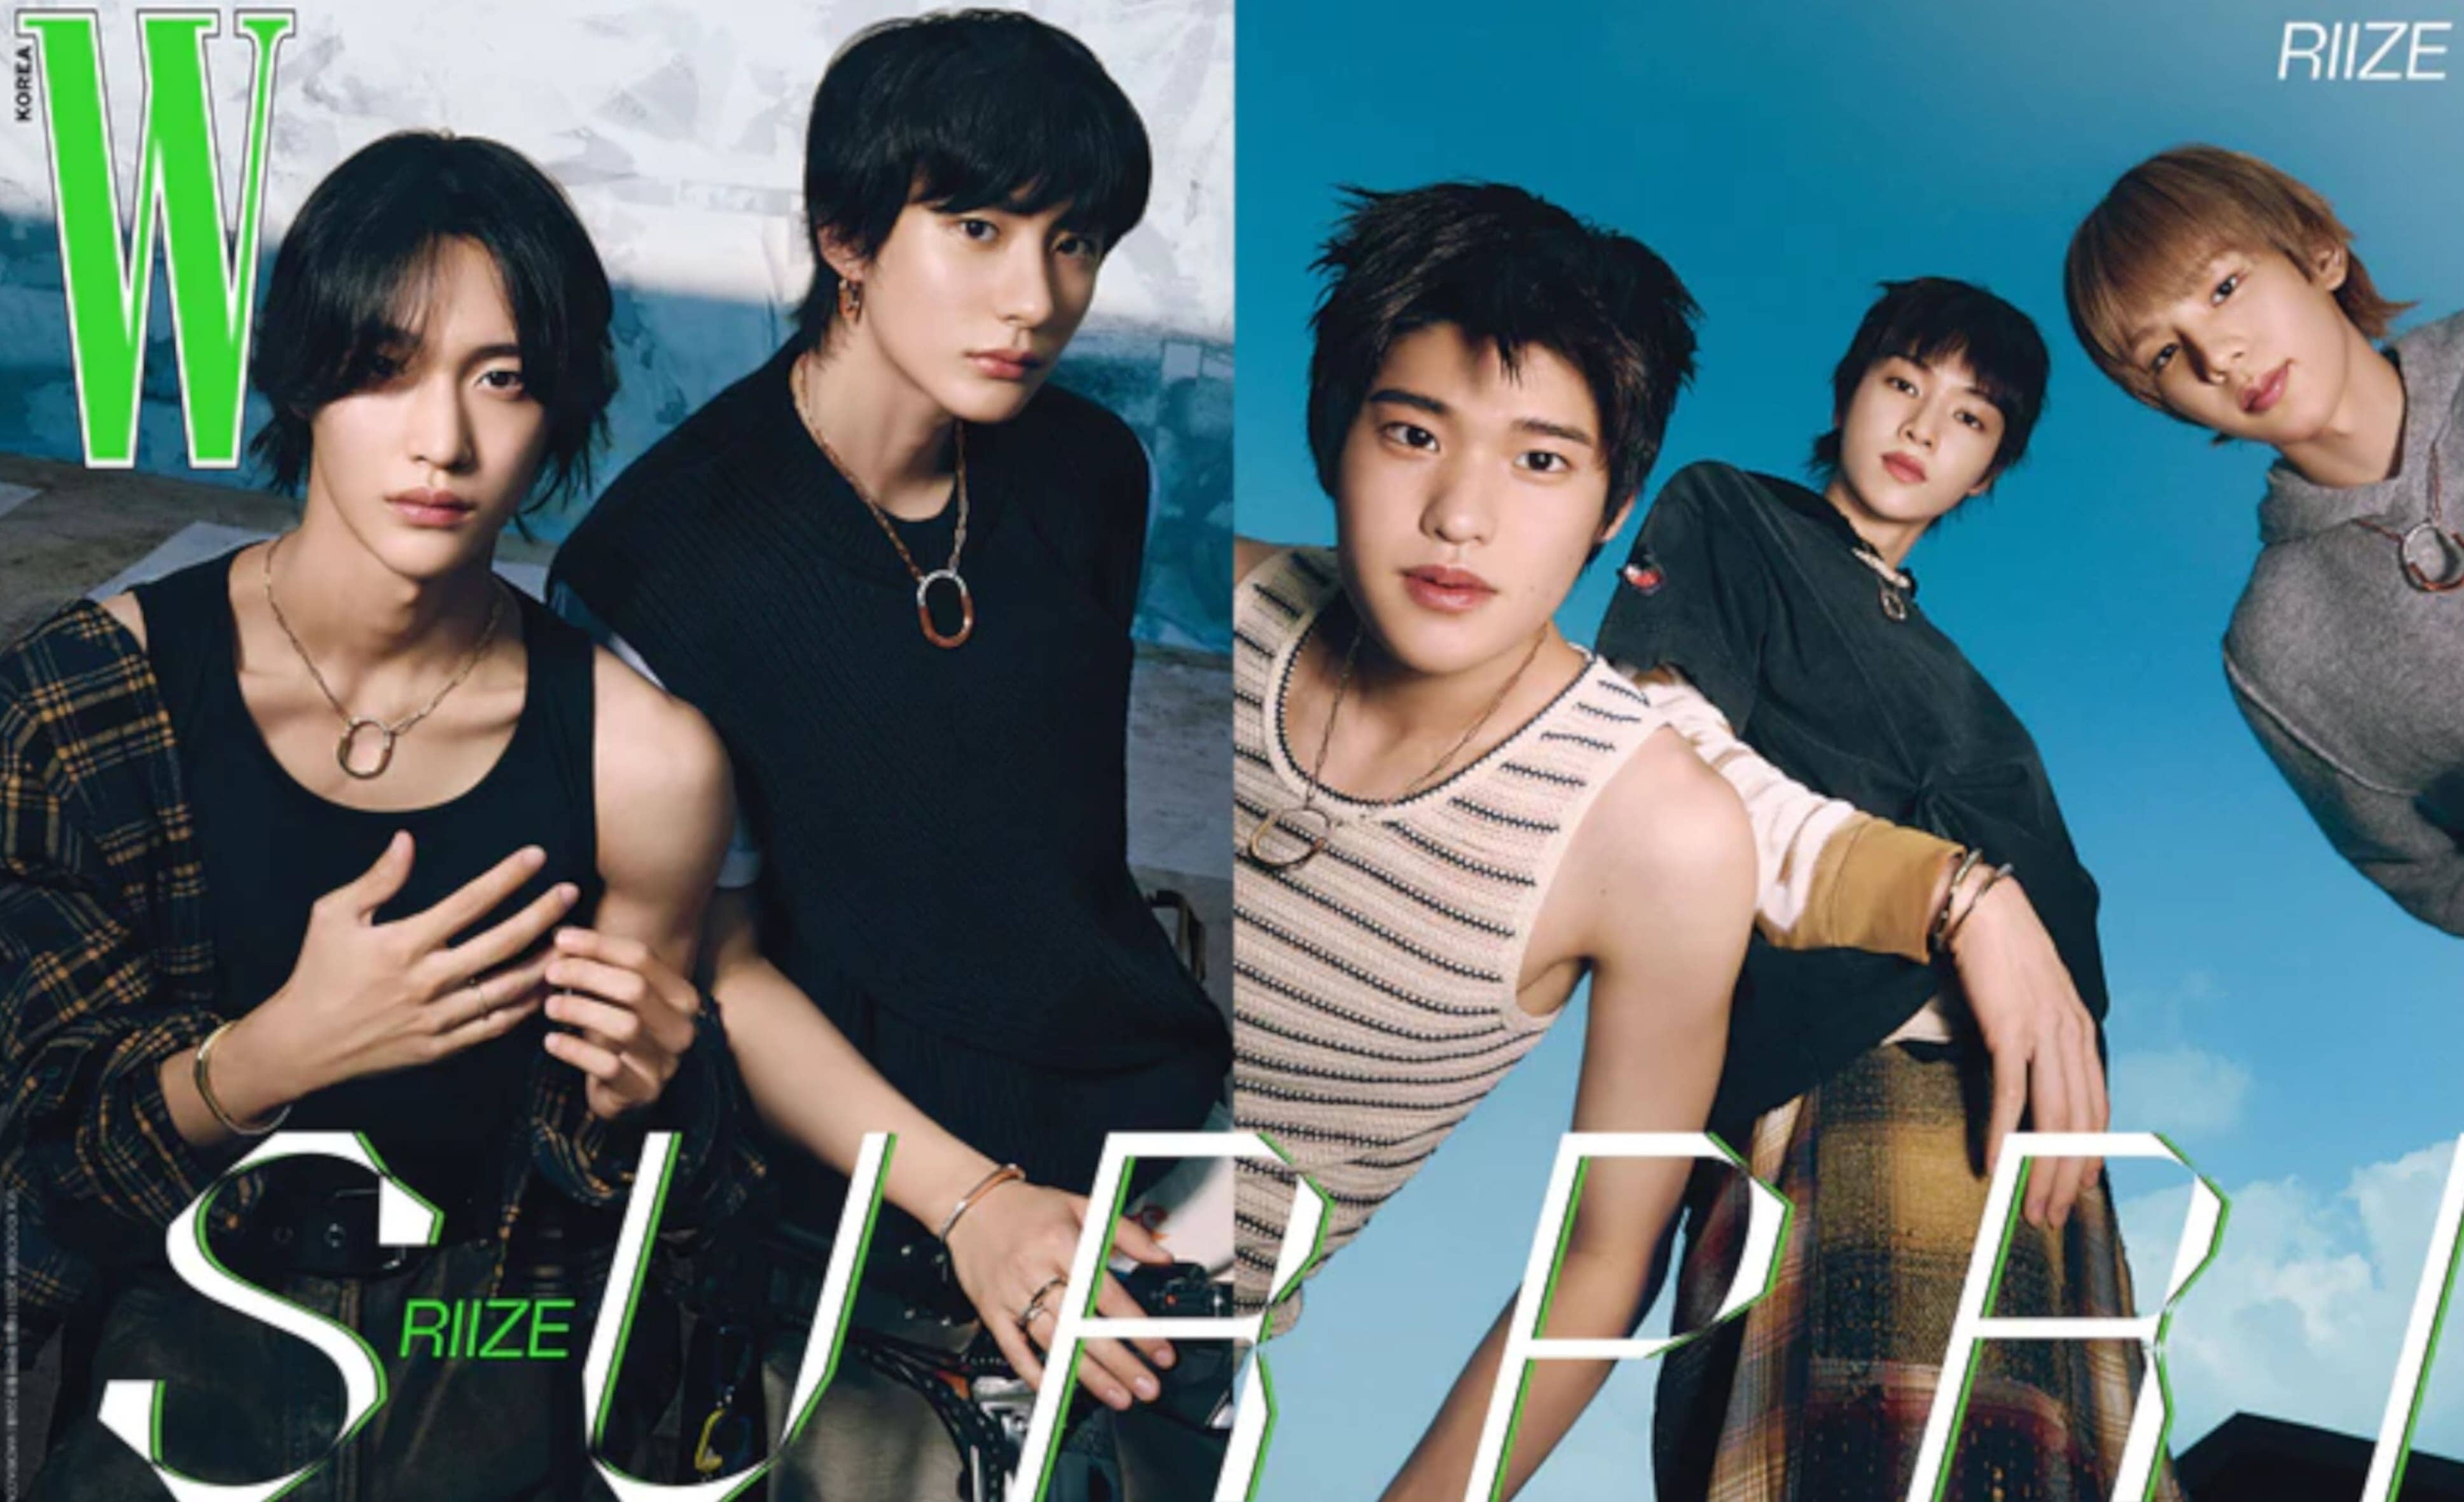 Die Boygroup RIIZE ziert das Cover von dem neuen W Korea Magazin!